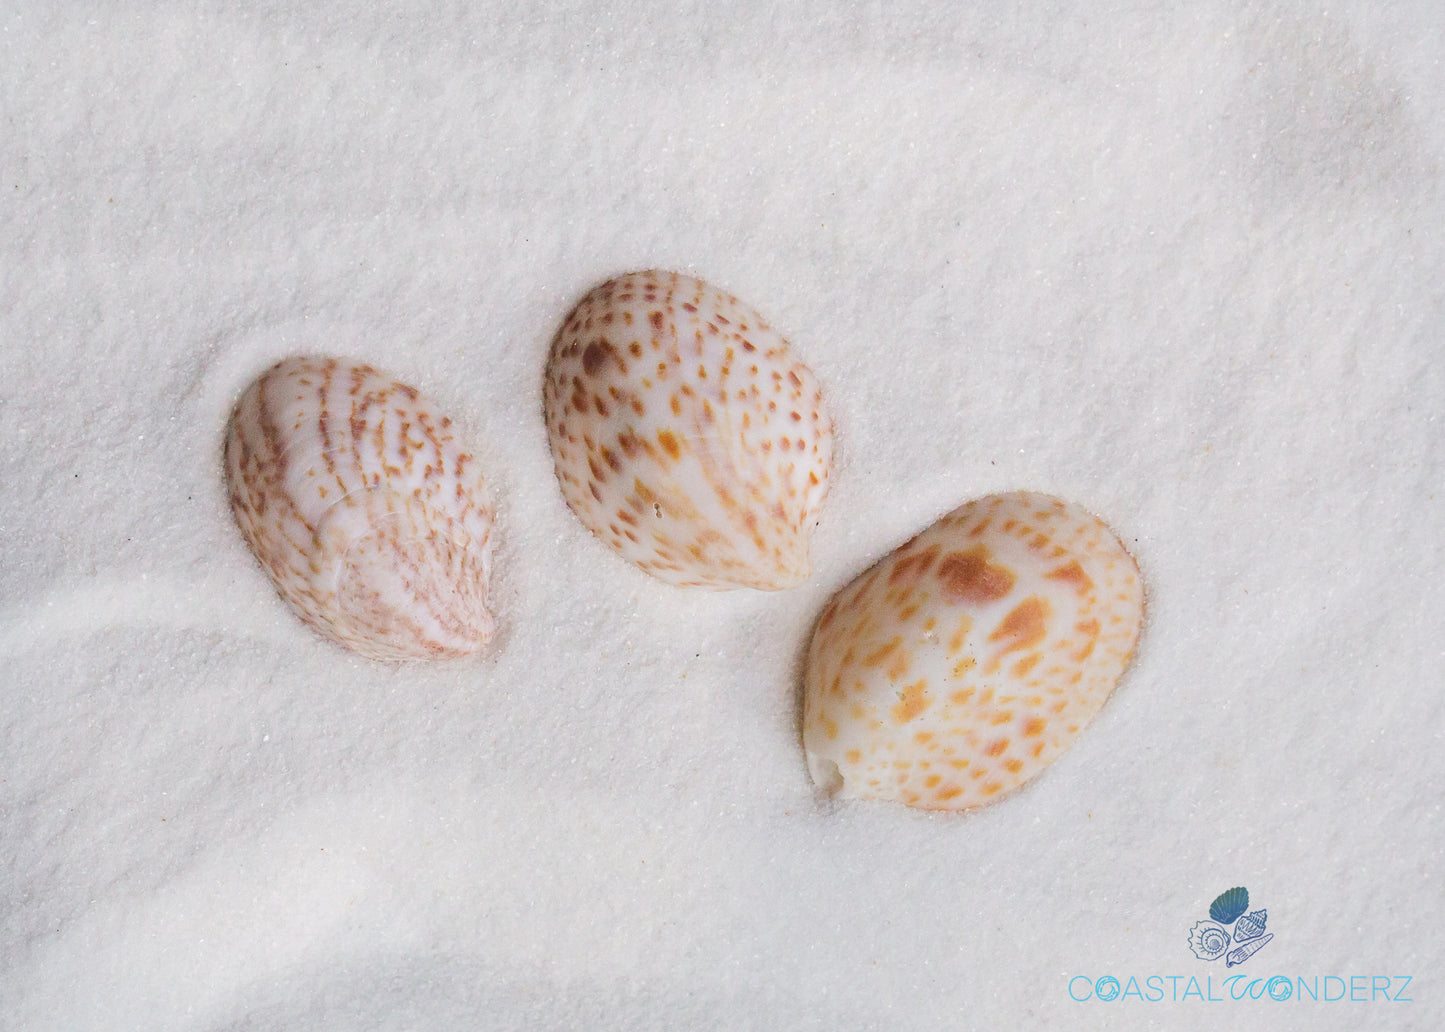 Spotted Slipper Shell (Crepidula Maculosa)